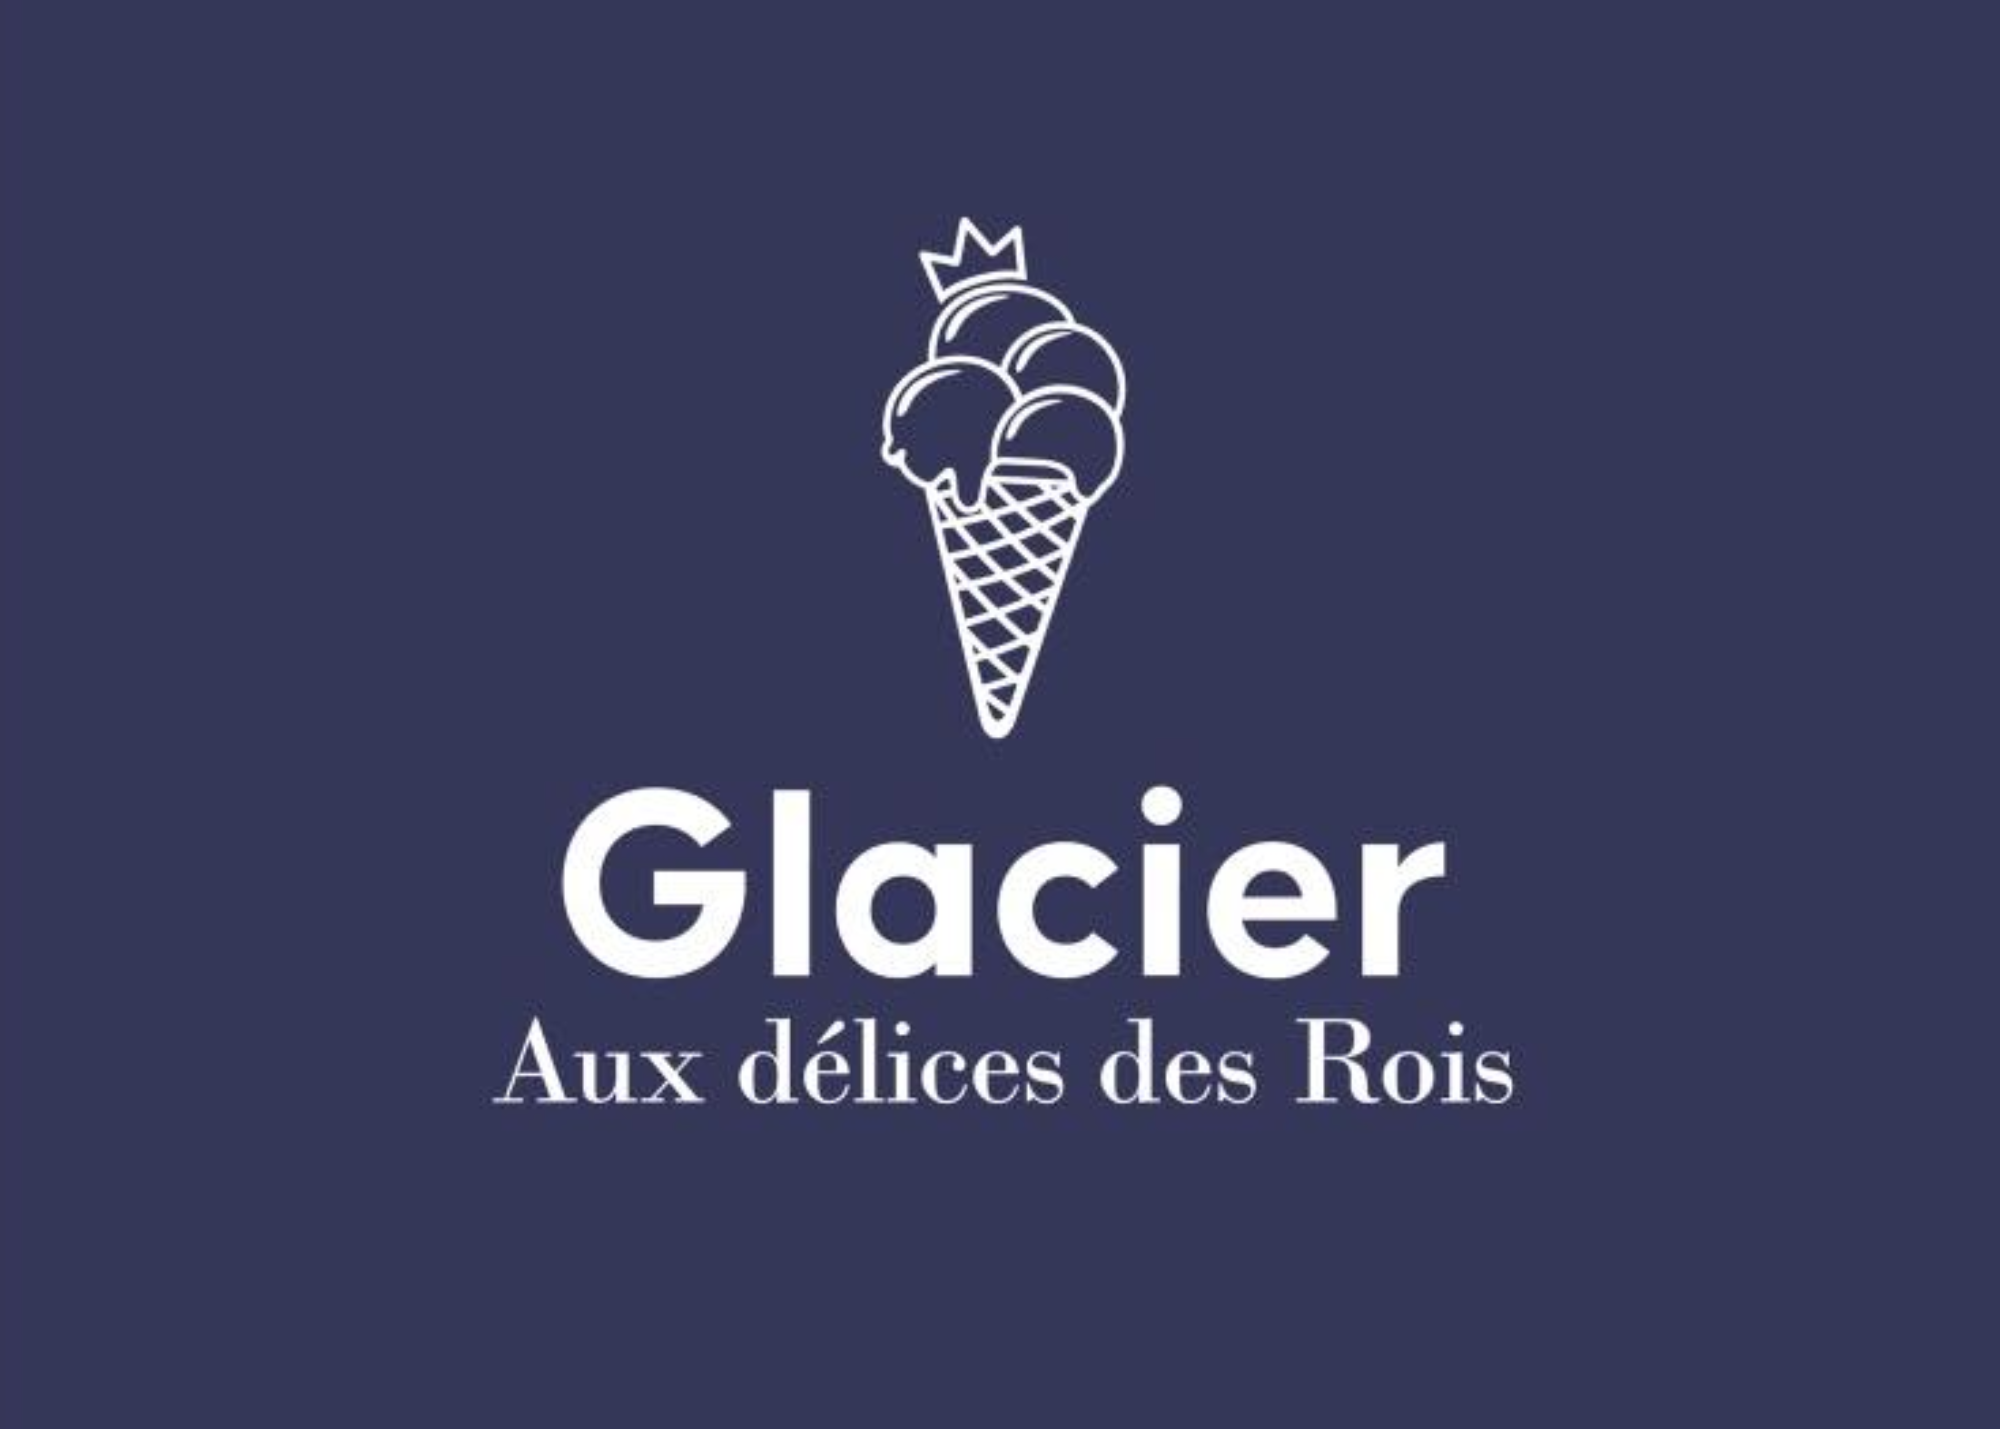 Glacier aux délices des Rois - Mangombroux